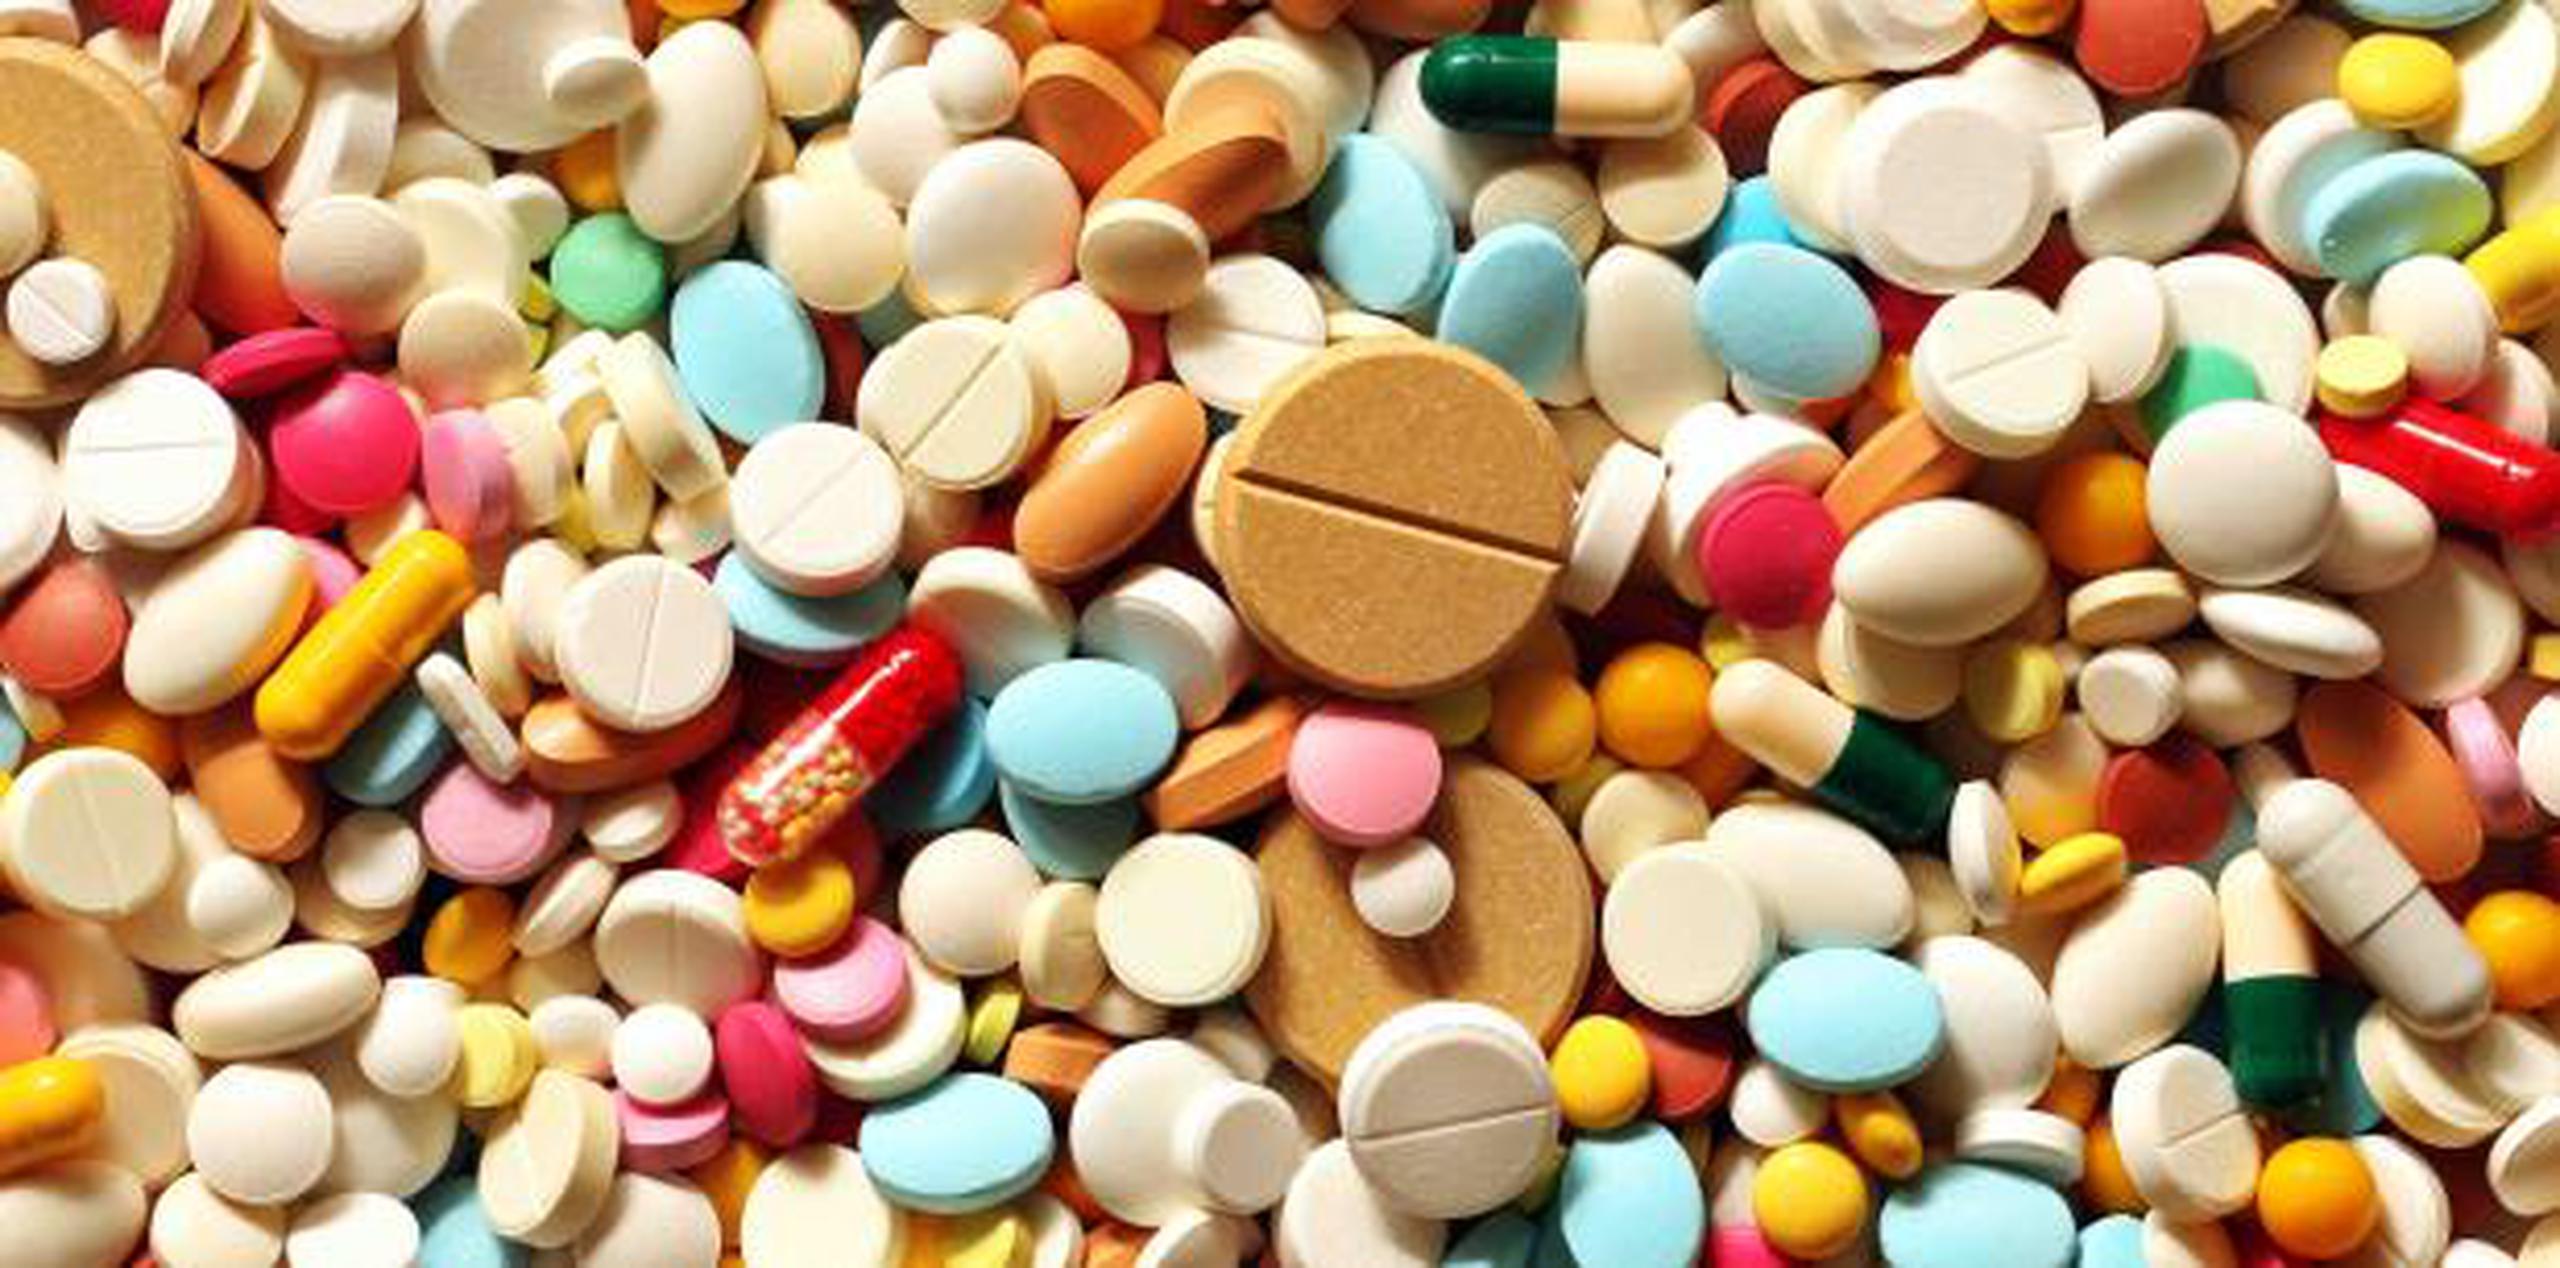 Muchos medicamentos populares de venta en mostrador antes se comparaban solo con receta. (Shutterstock)